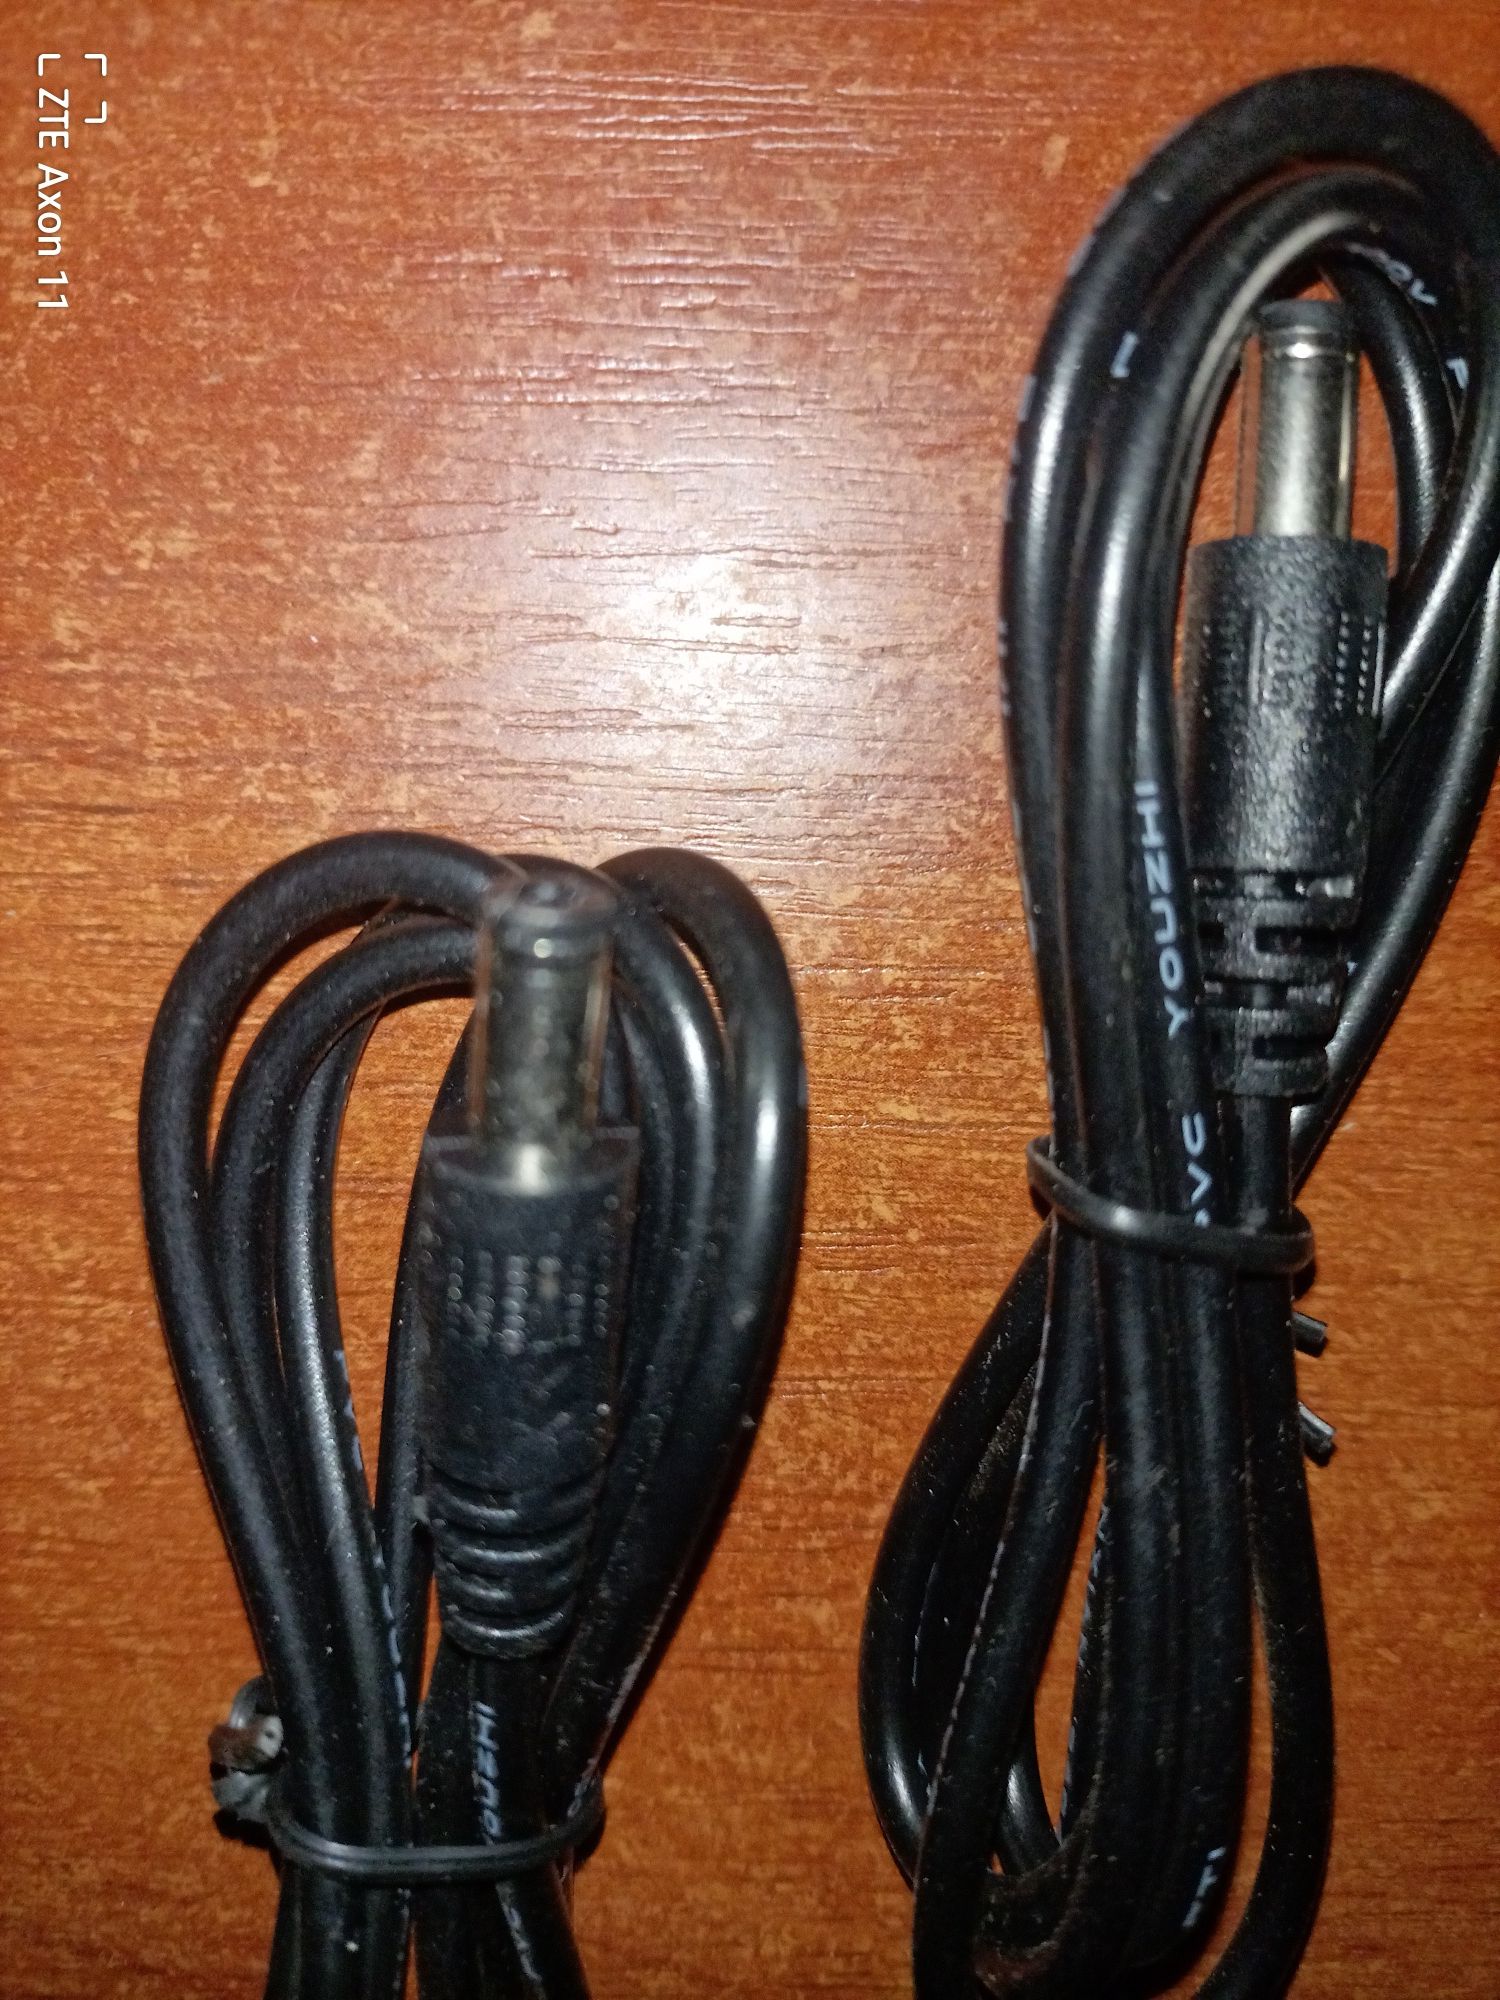 Повышающий переходник – кабель для роутера USB 5V to 12V DC 5.5х2.1